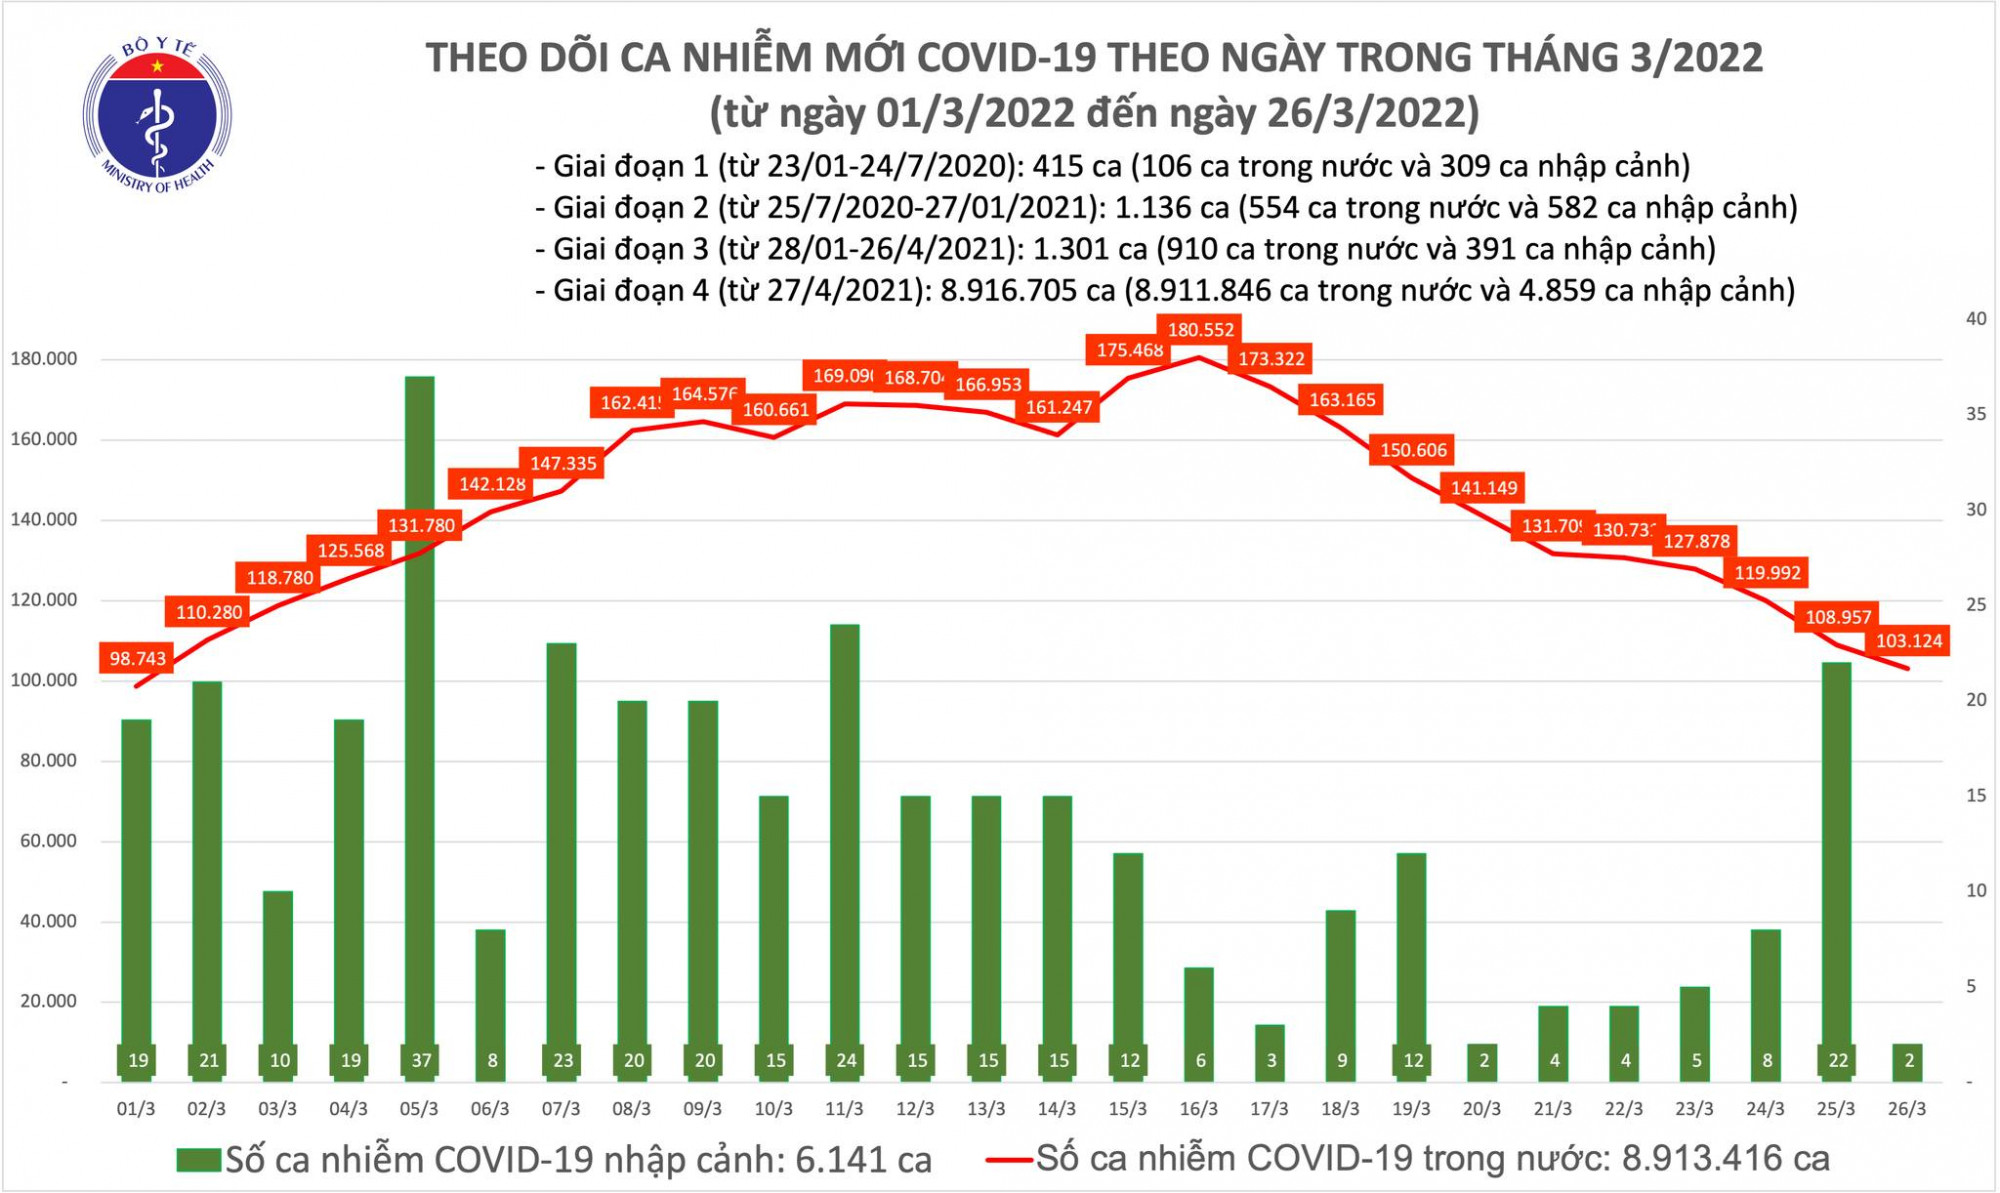 Biểu đồ theo dõi ca nhiễm COVID-19 của Bộ Y tế từ ngày 1/3 đến ngày 26/3